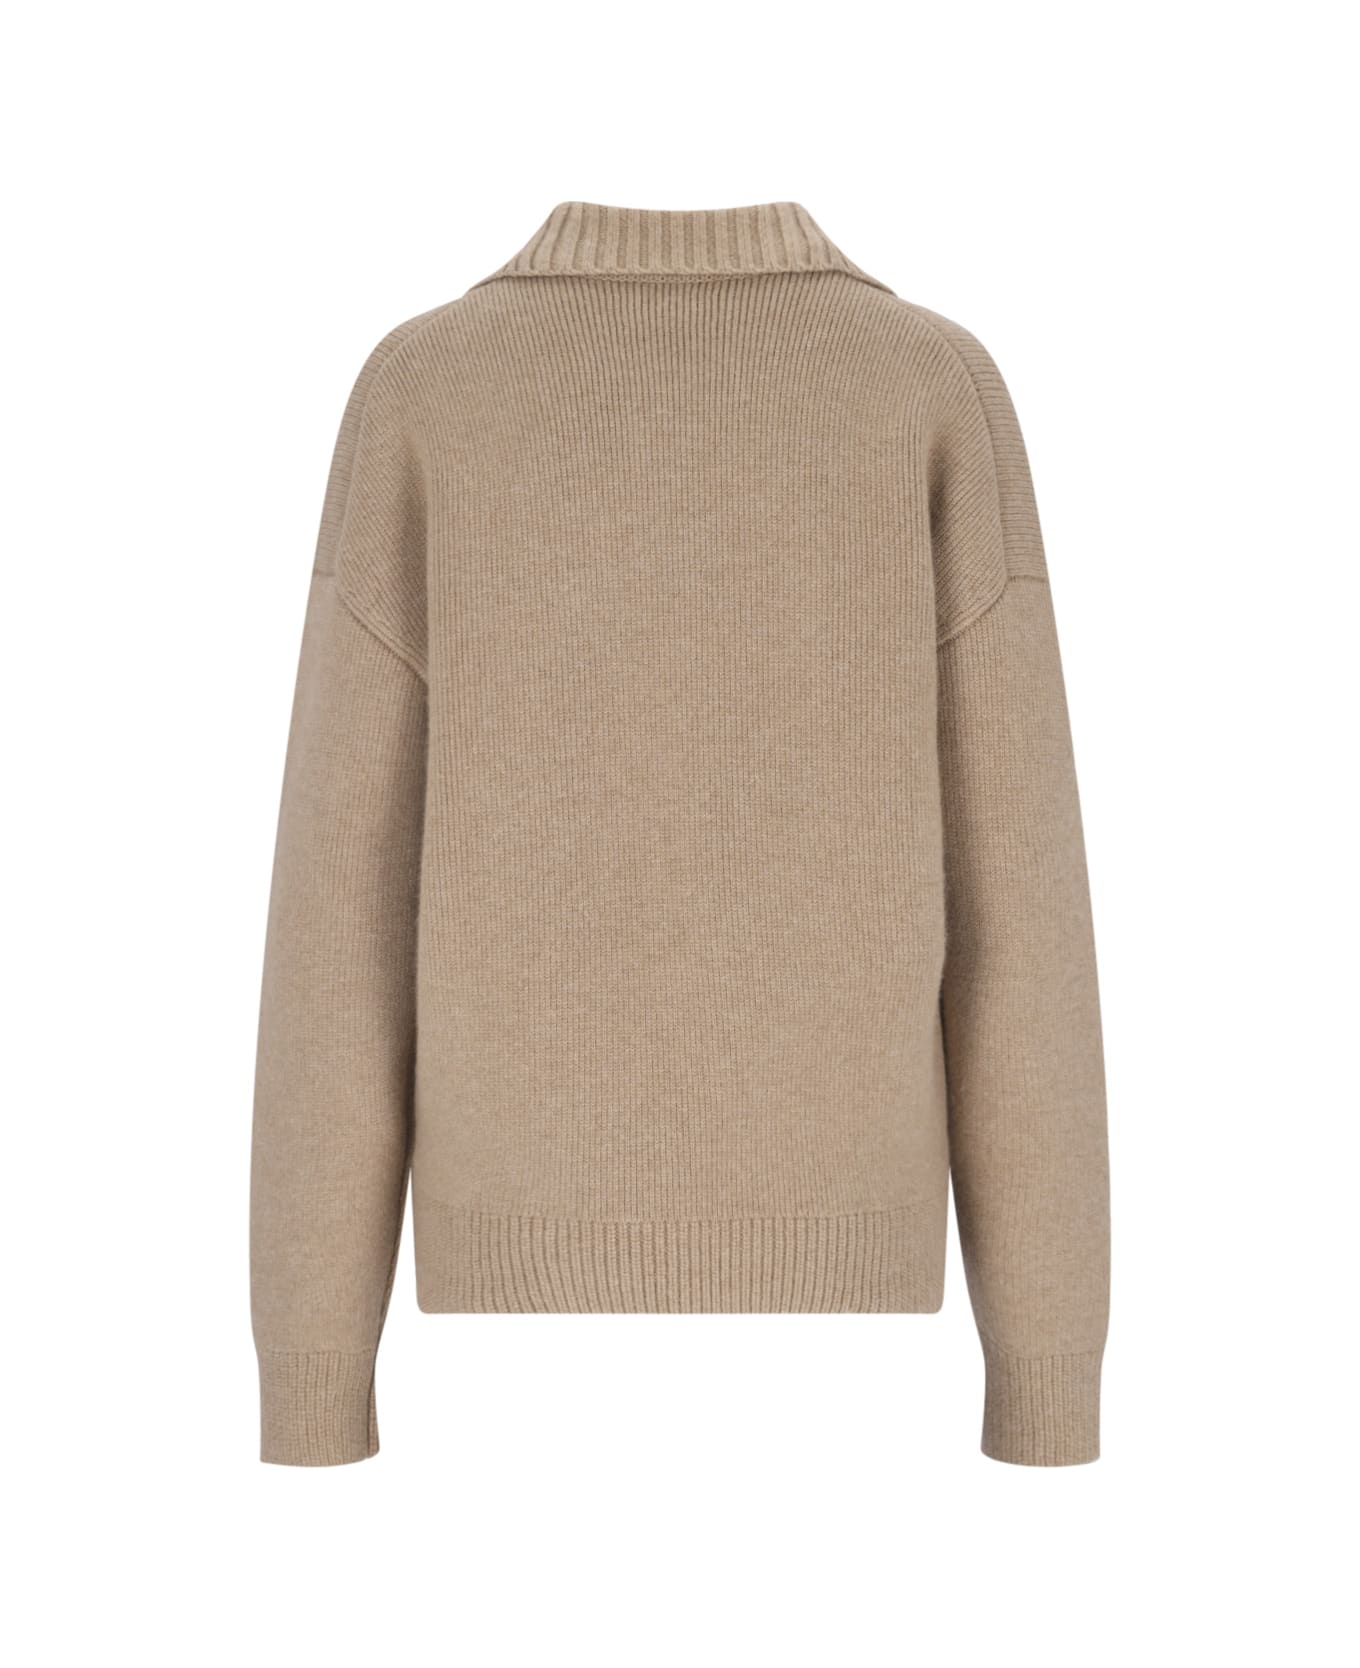 Khaite 'bristol' Sweater - Beige